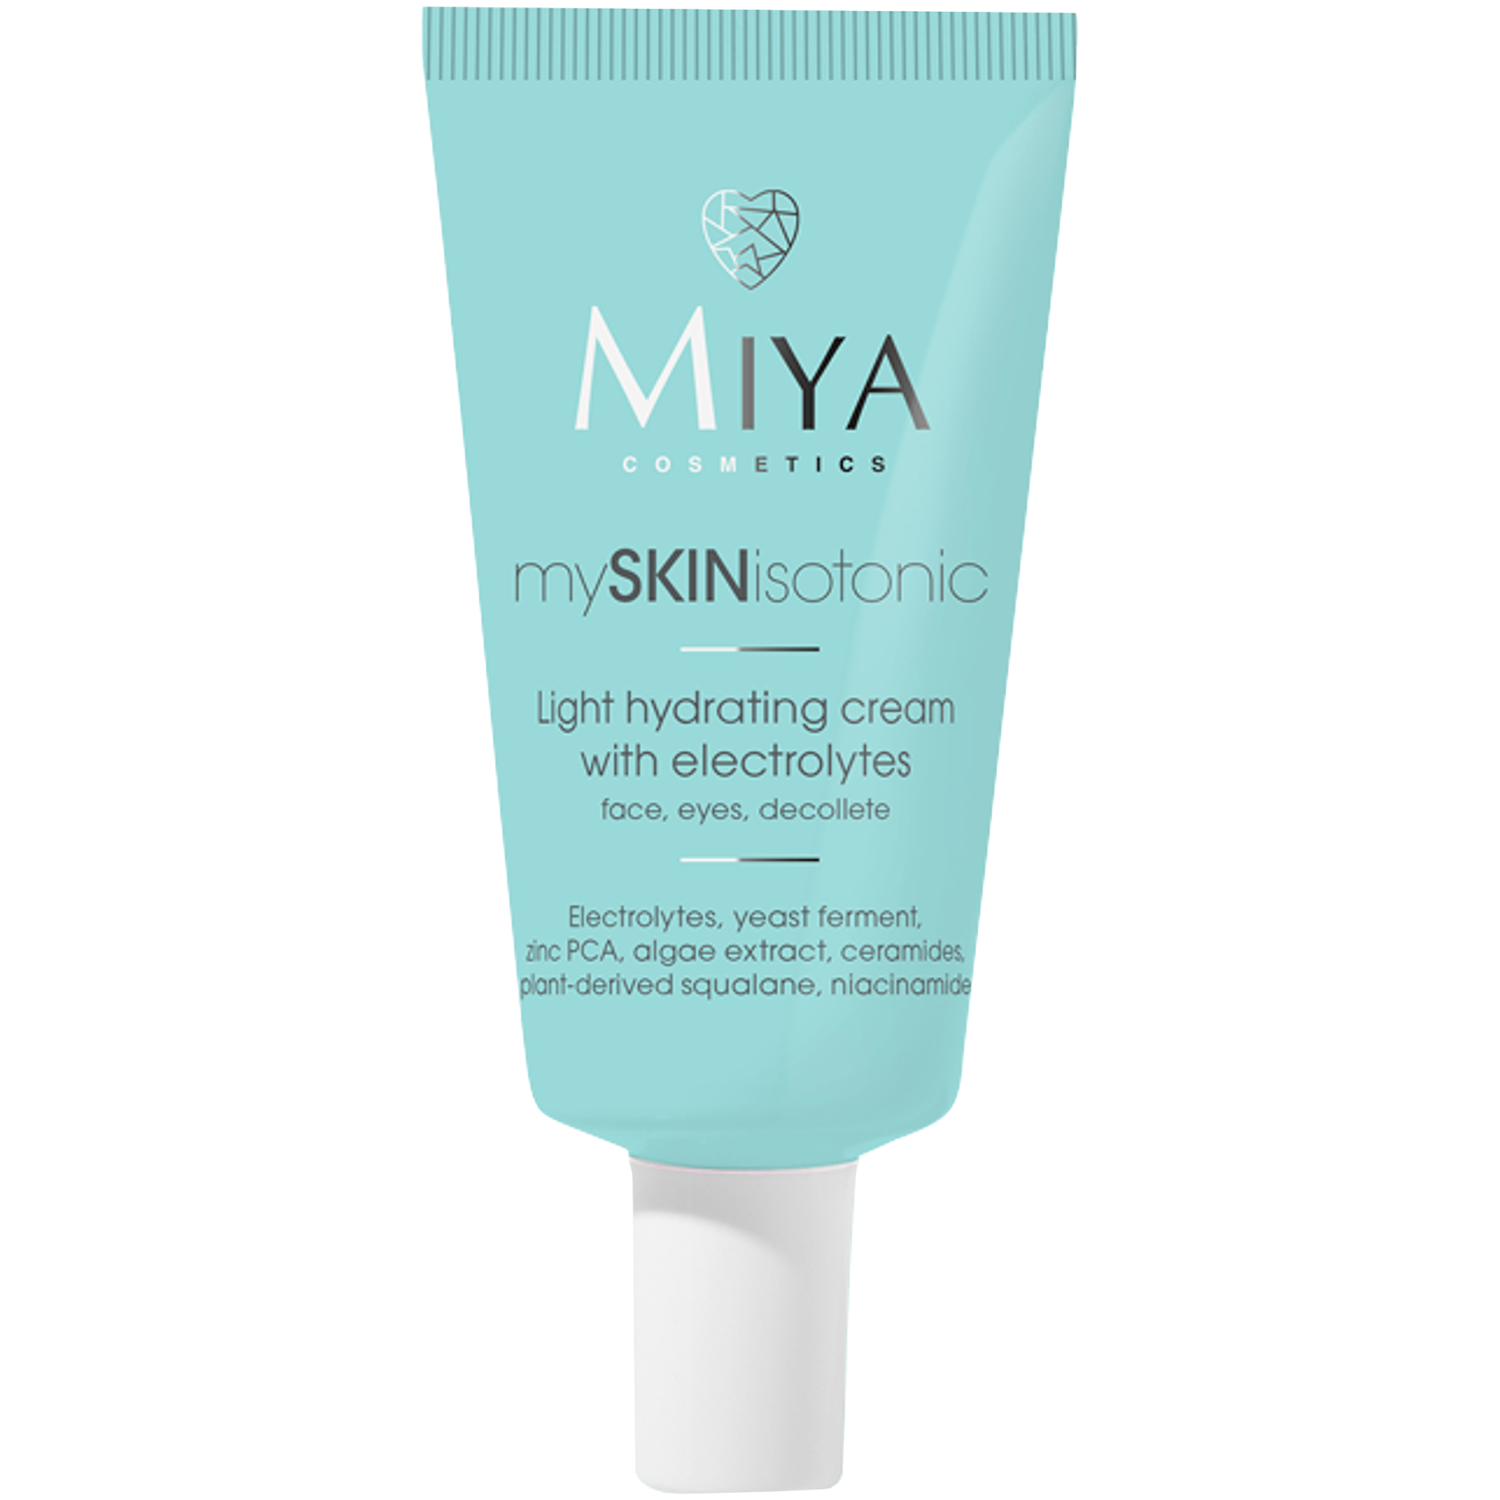 Легкий увлажняющий крем с электролитами для лица Miya Cosmetics Myskinisotonic, 40 мл крем для лица белита крем для лица для всех типов кожи ежедневный уход